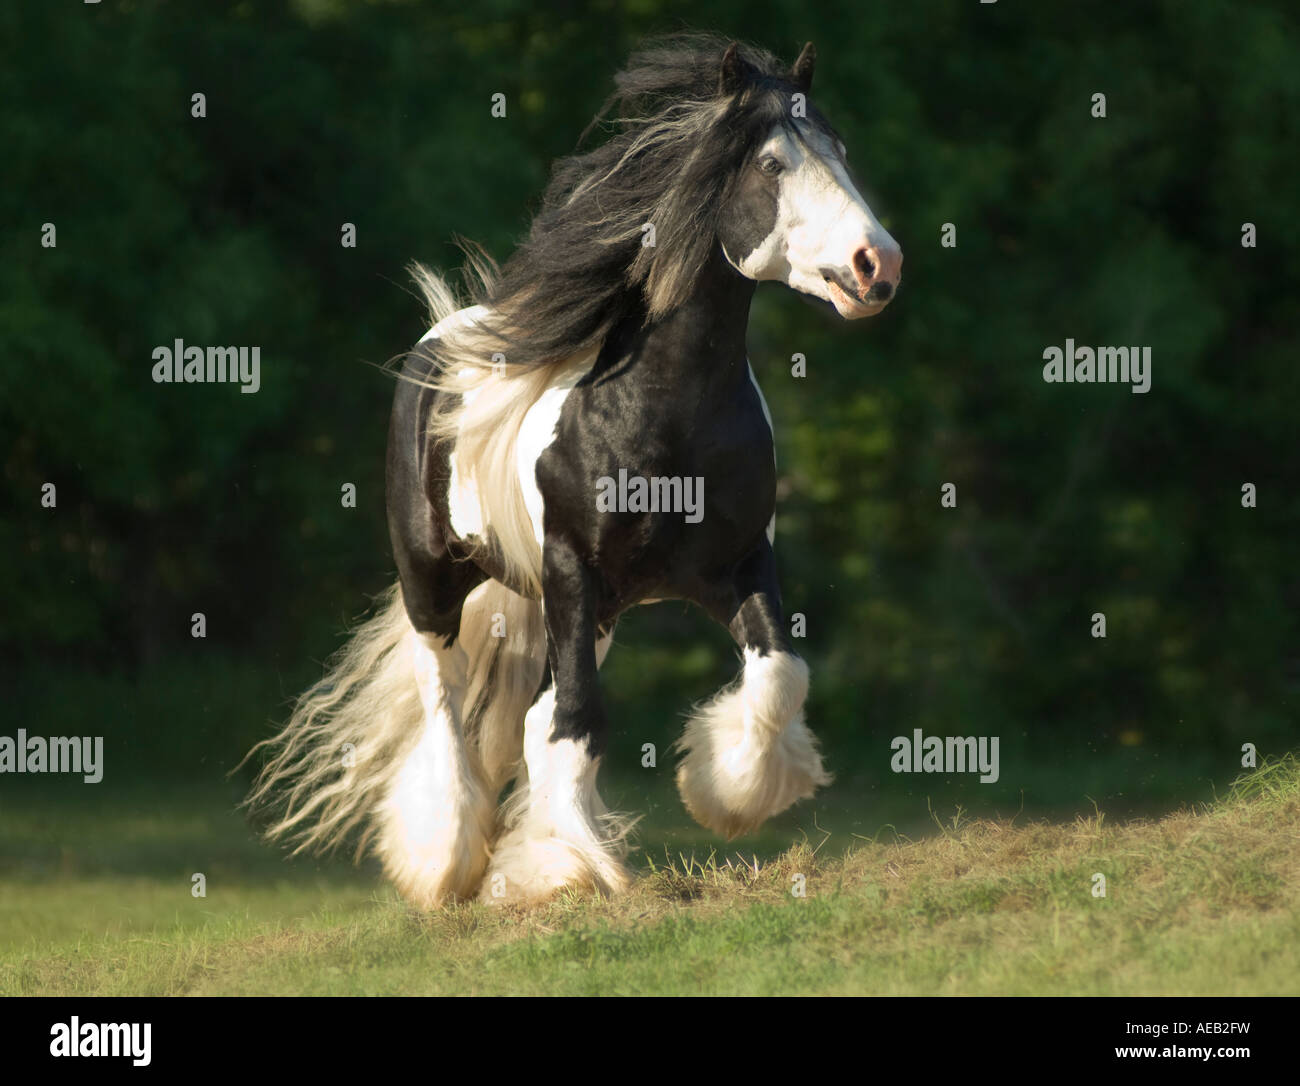 Gypsy Vanner Horse stallion tourne vers nous avec des plumes de la queue, la crinière anf flying Banque D'Images